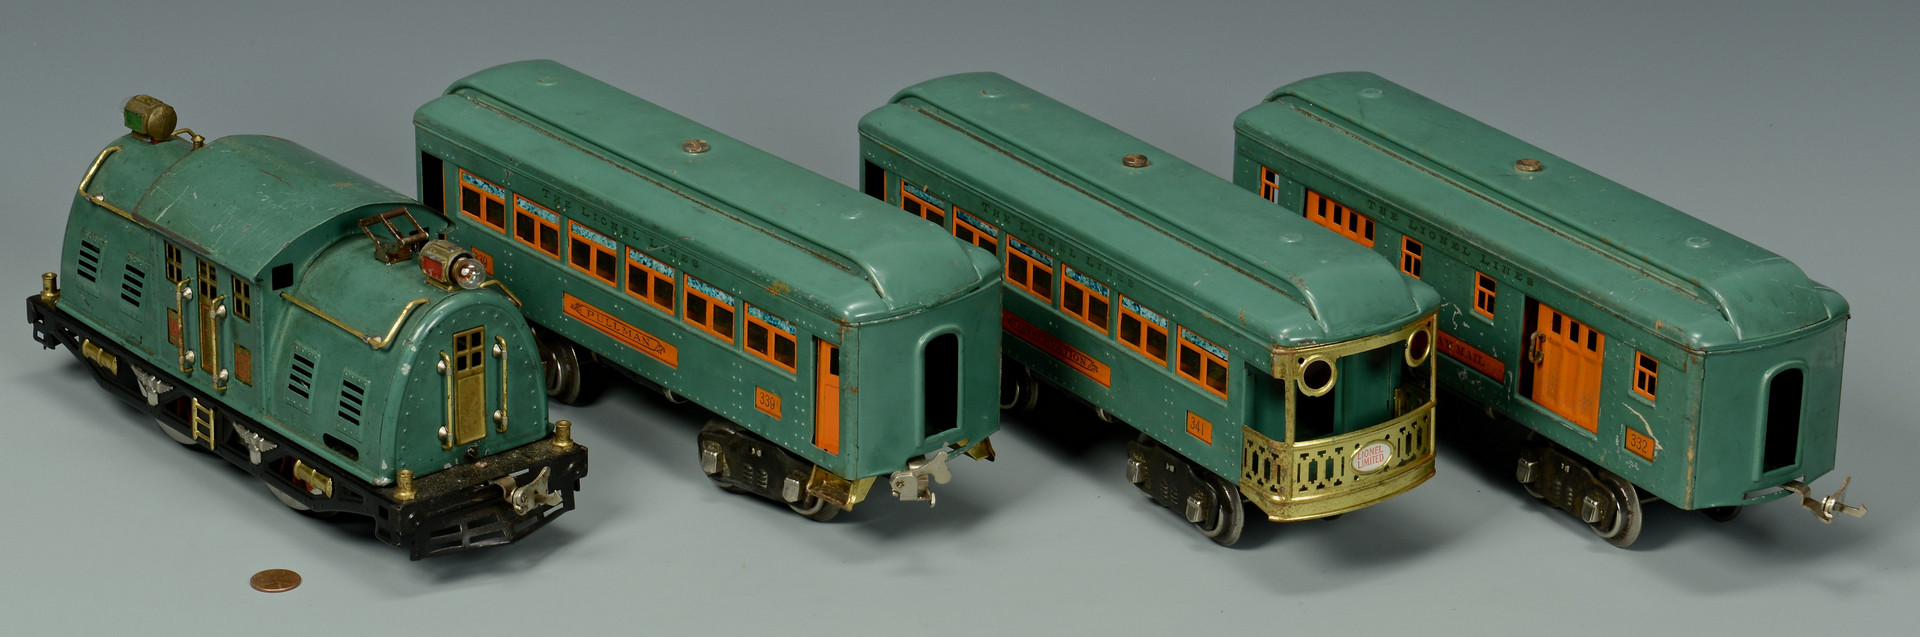 Lot 462: Boxed Train sets incl. Lionel 352E, American Flyer